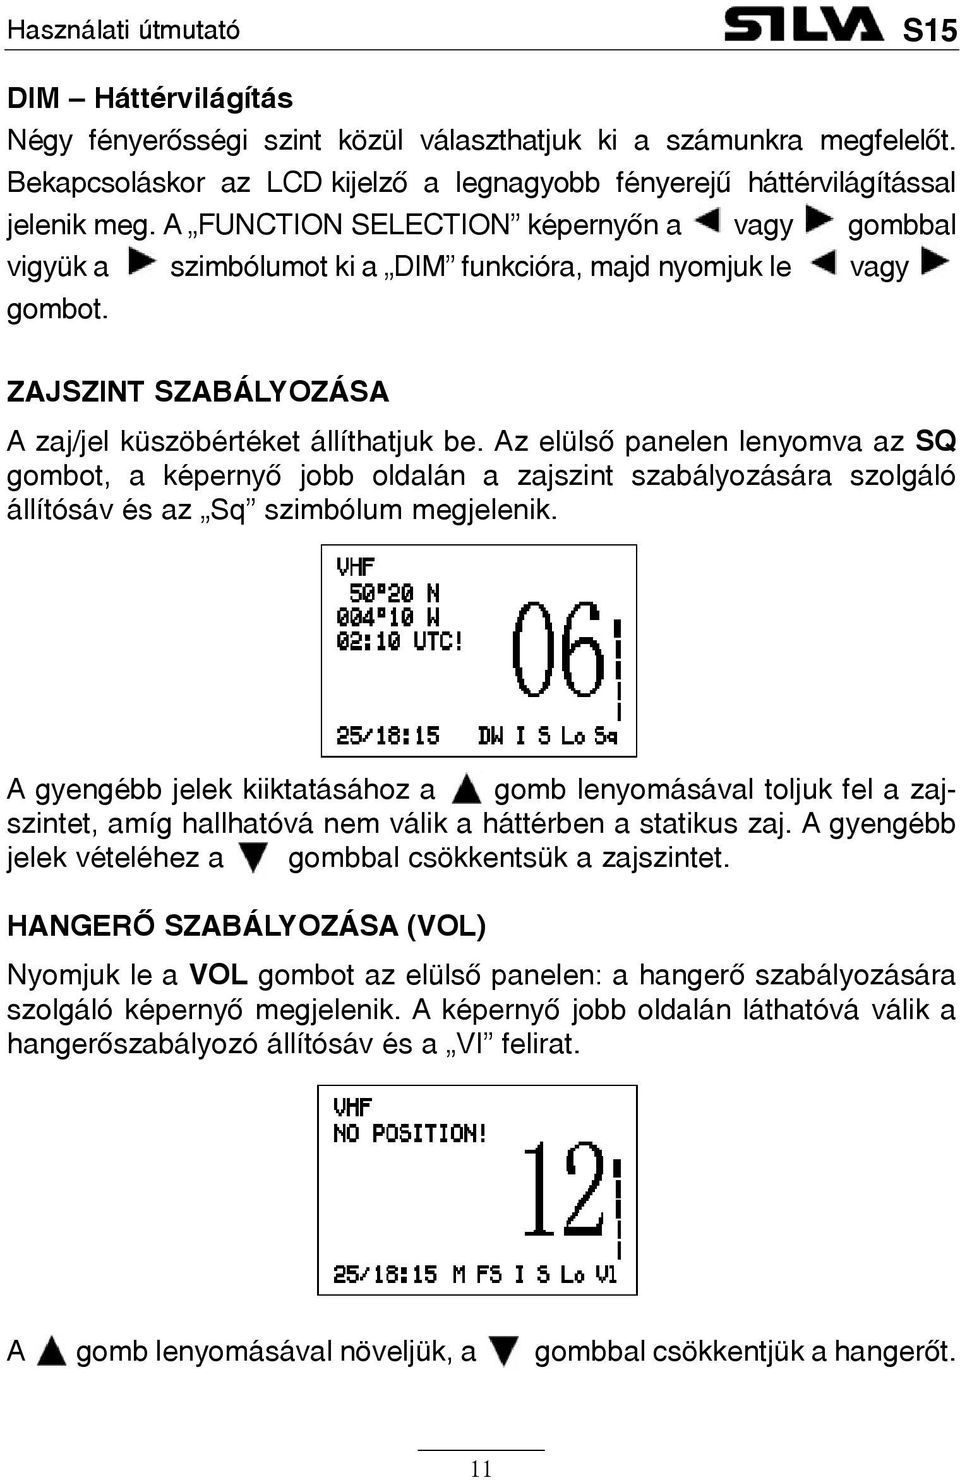 Az elülsõ panelen lenyomva az SQ gombot, a képernyõ jobb oldalán a zajszint szabályozására szolgáló állítósáv és az Sq szimbólum megjelenik.